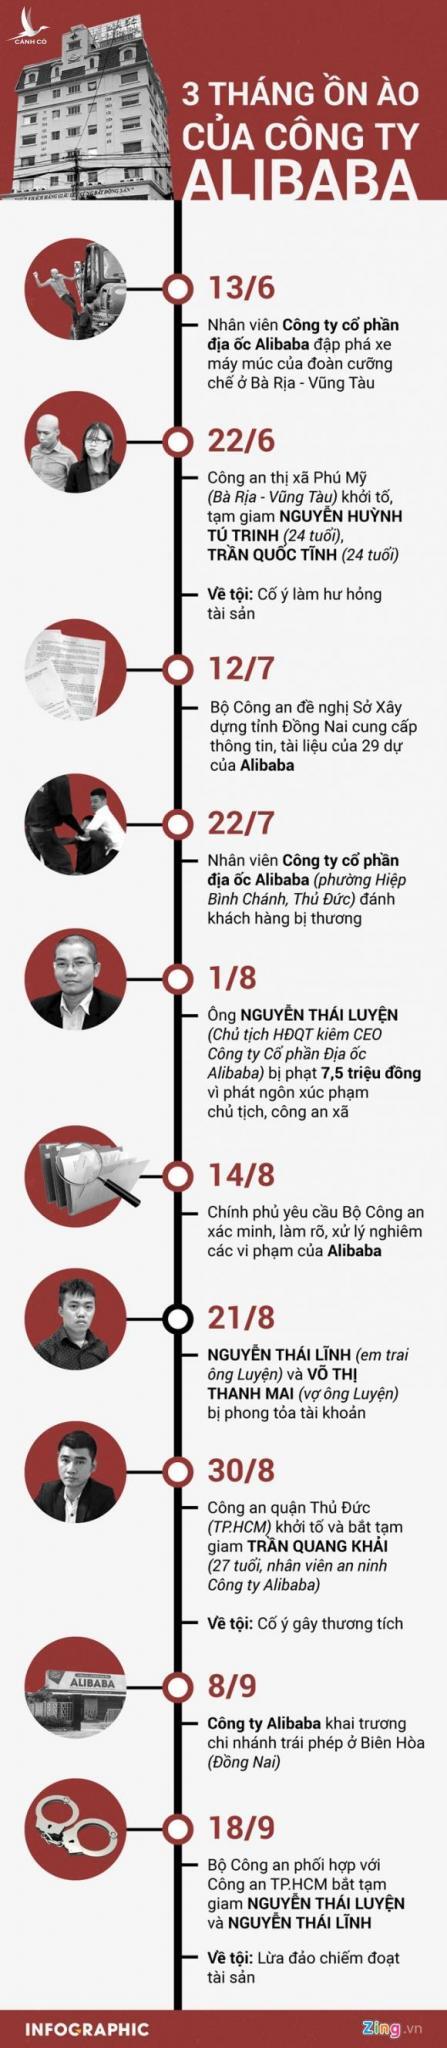 Công an TP.HCM: Đủ tài liệu chứng minh Chủ tịch HĐQT Alibaba lừa đảo